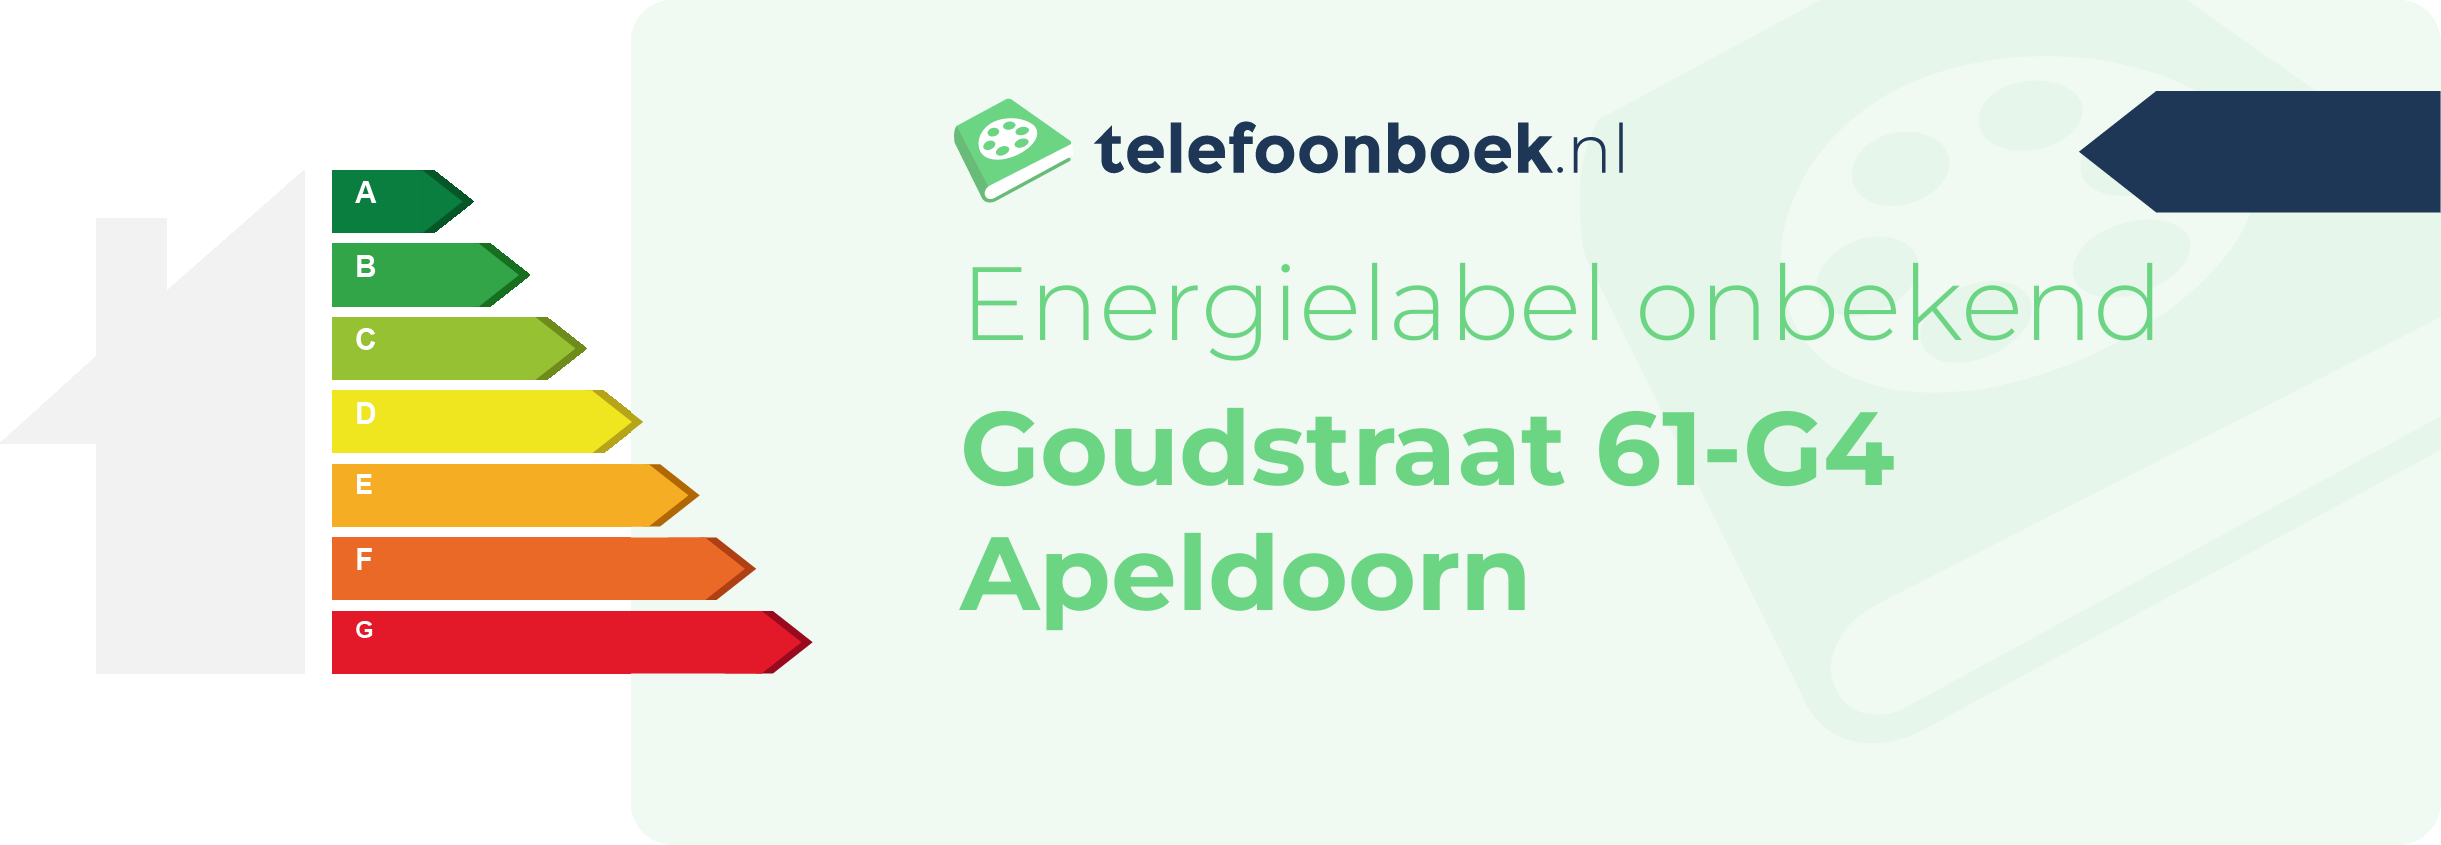 Energielabel Goudstraat 61-G4 Apeldoorn